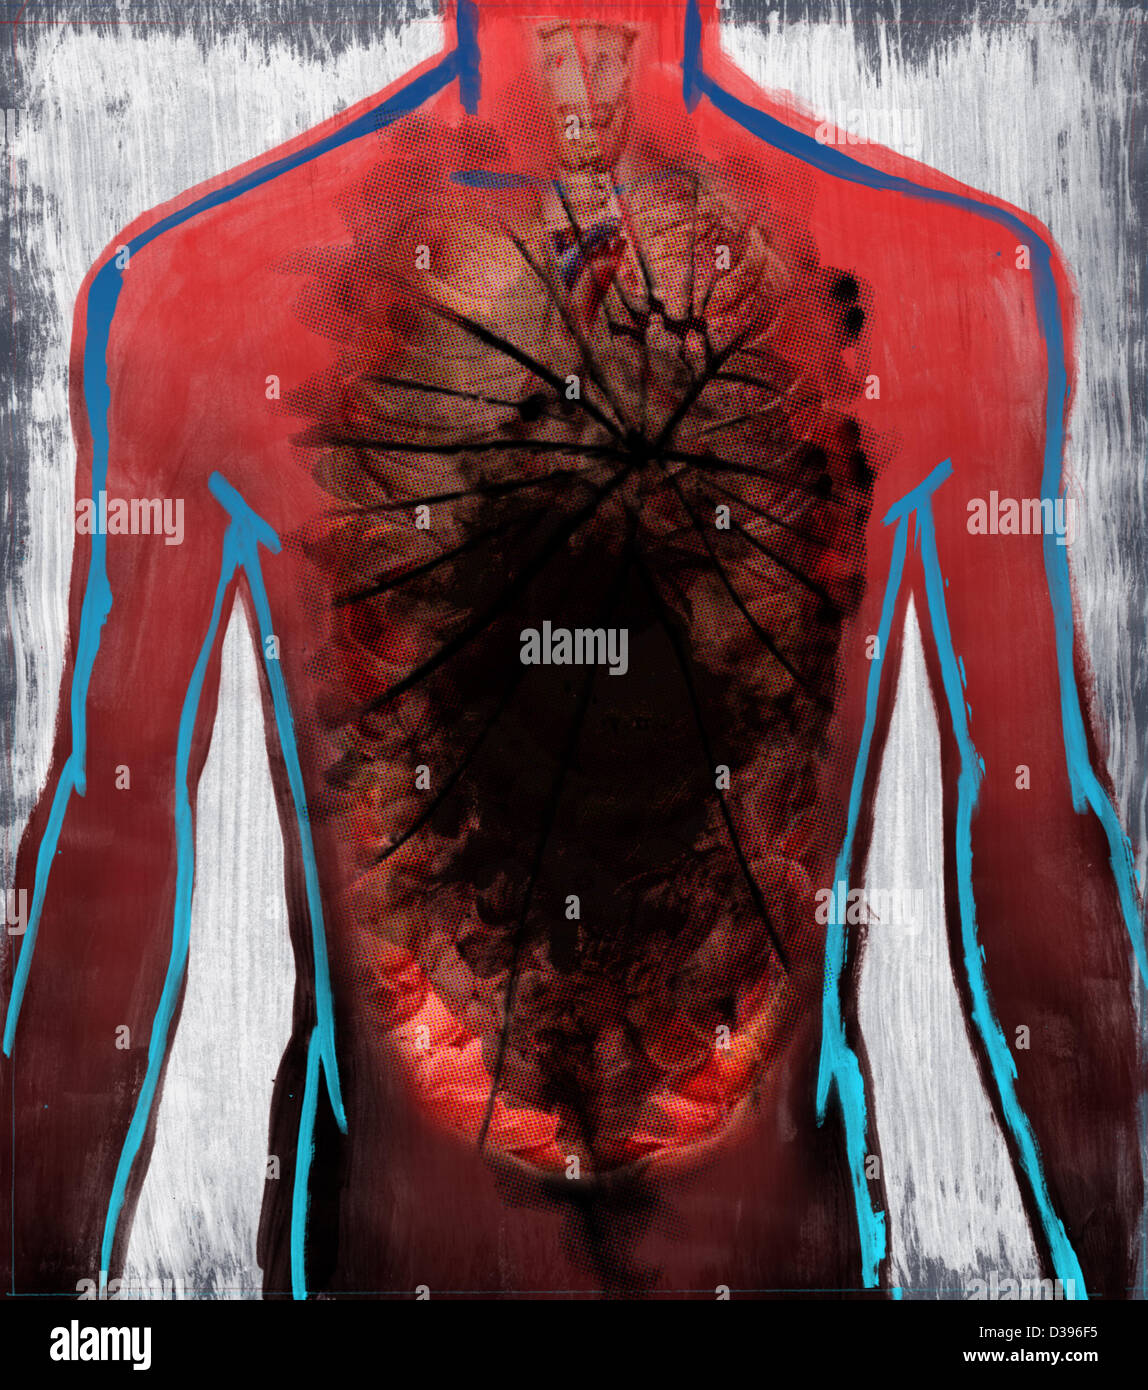 Image d'illustration de l'organe humain affecté de cancer Banque D'Images